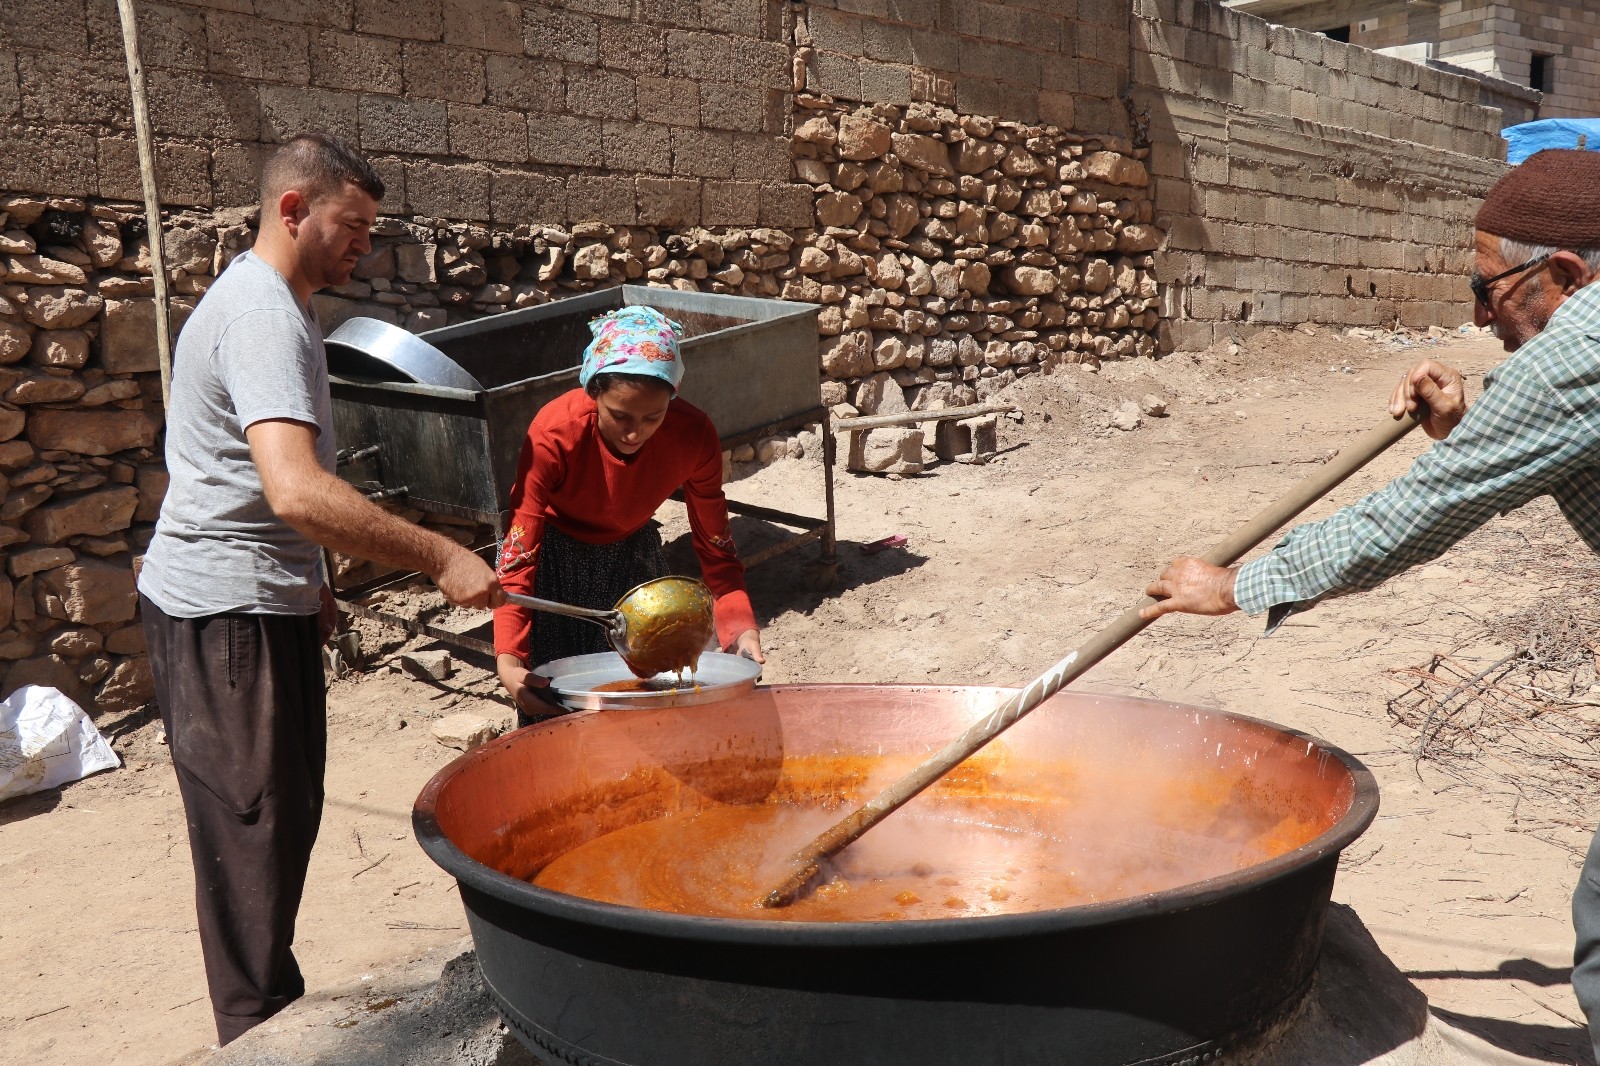 Gaziantep’te üzümden yapılan tatlı tarhana mesaisi başladı #gaziantep